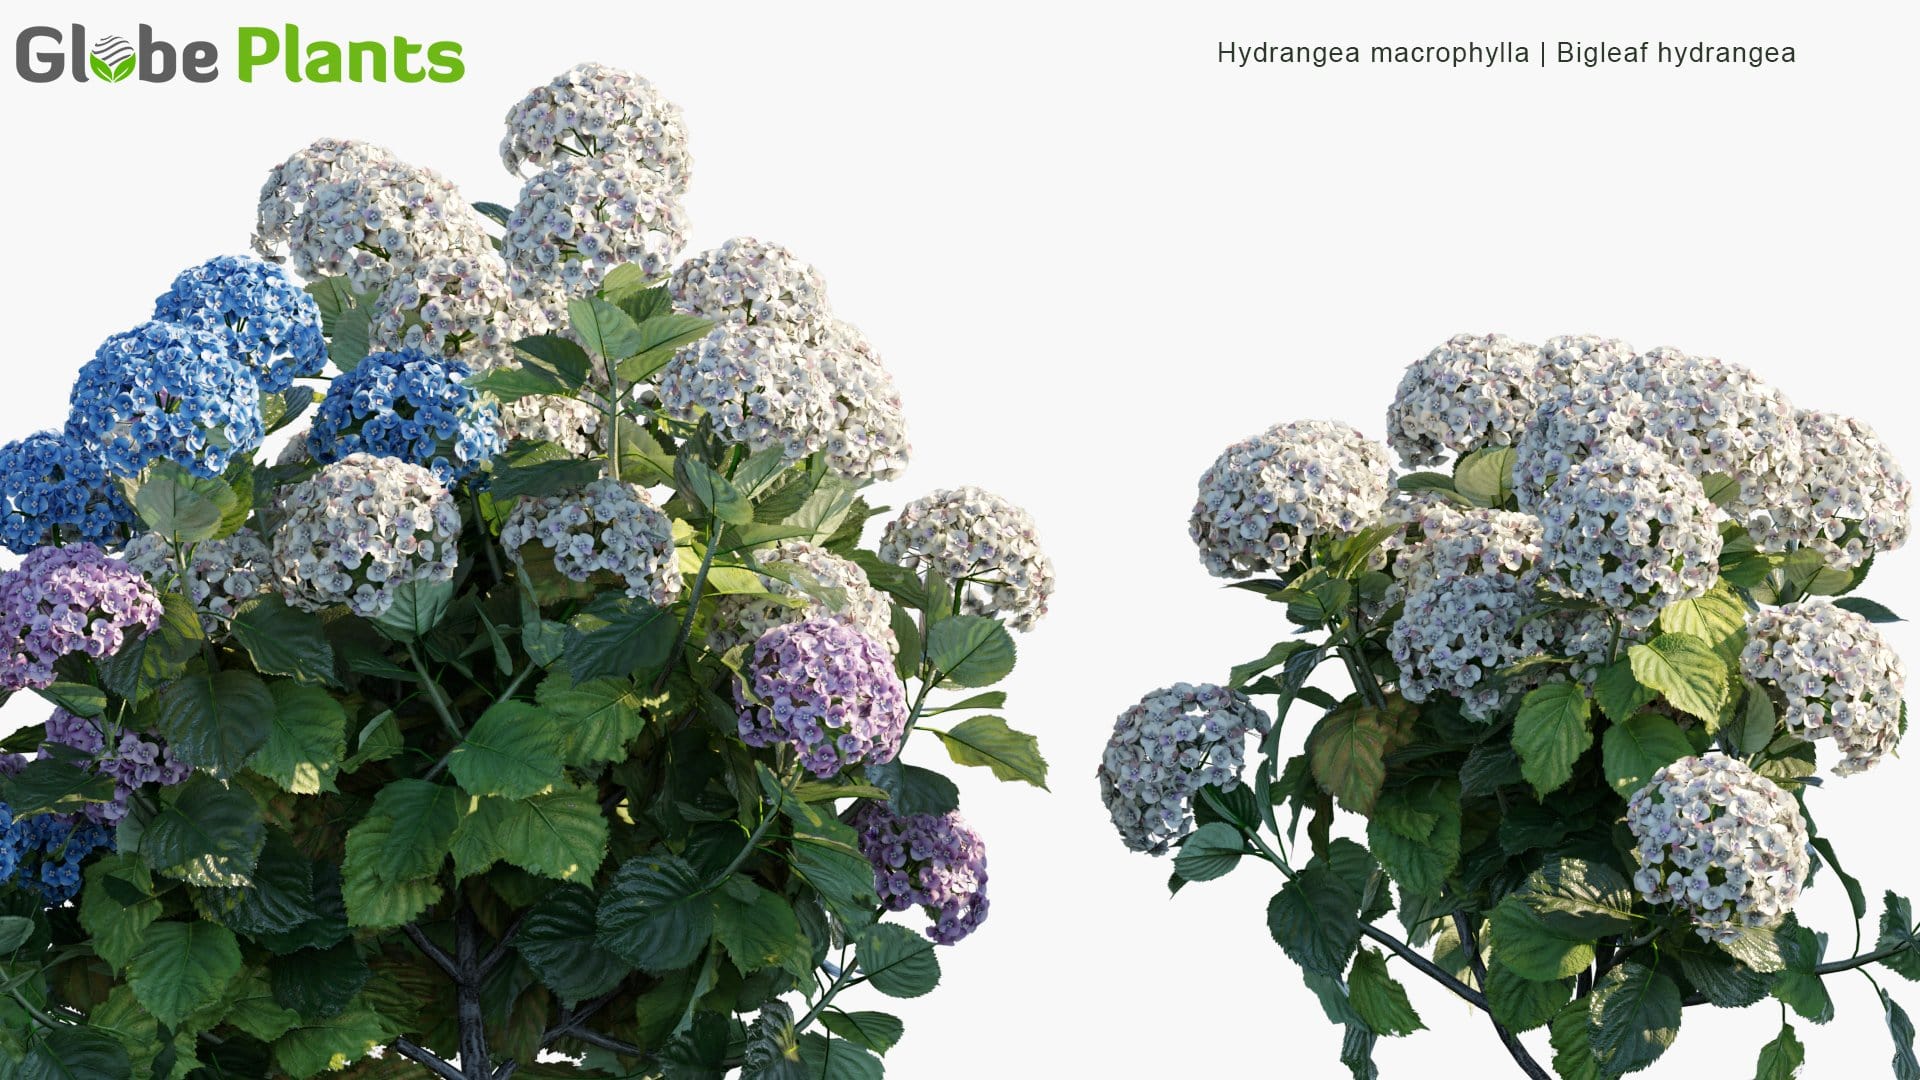 Hydrangea Macrophylla - Bigleaf Hydrangea, French Hydrangea, Lacecap Hydrangea, Mophead Hydrangea, Penny Mac, Hortensia (3D Model)